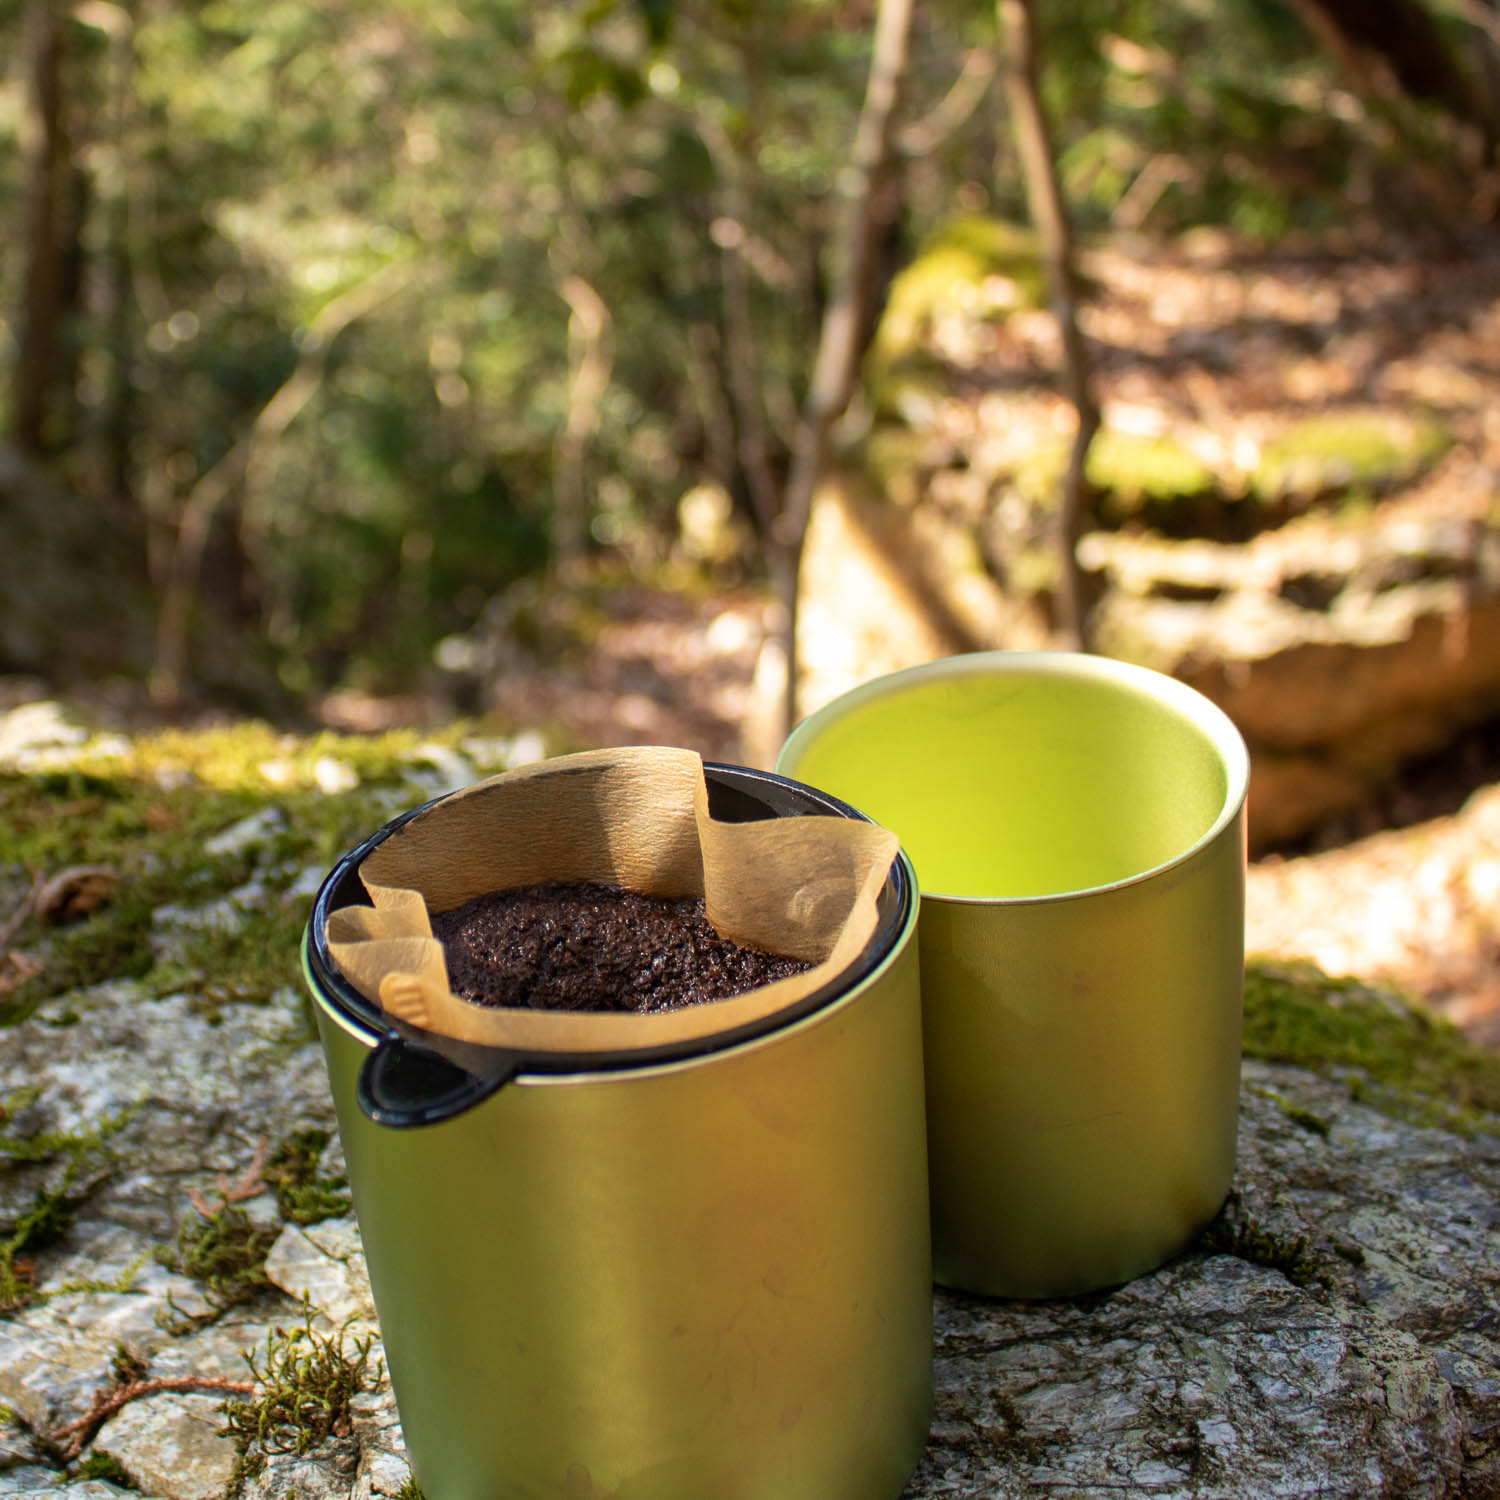 スタッキングマグ雪峰にコーヒードリッパーとコーヒー豆がセットされている。